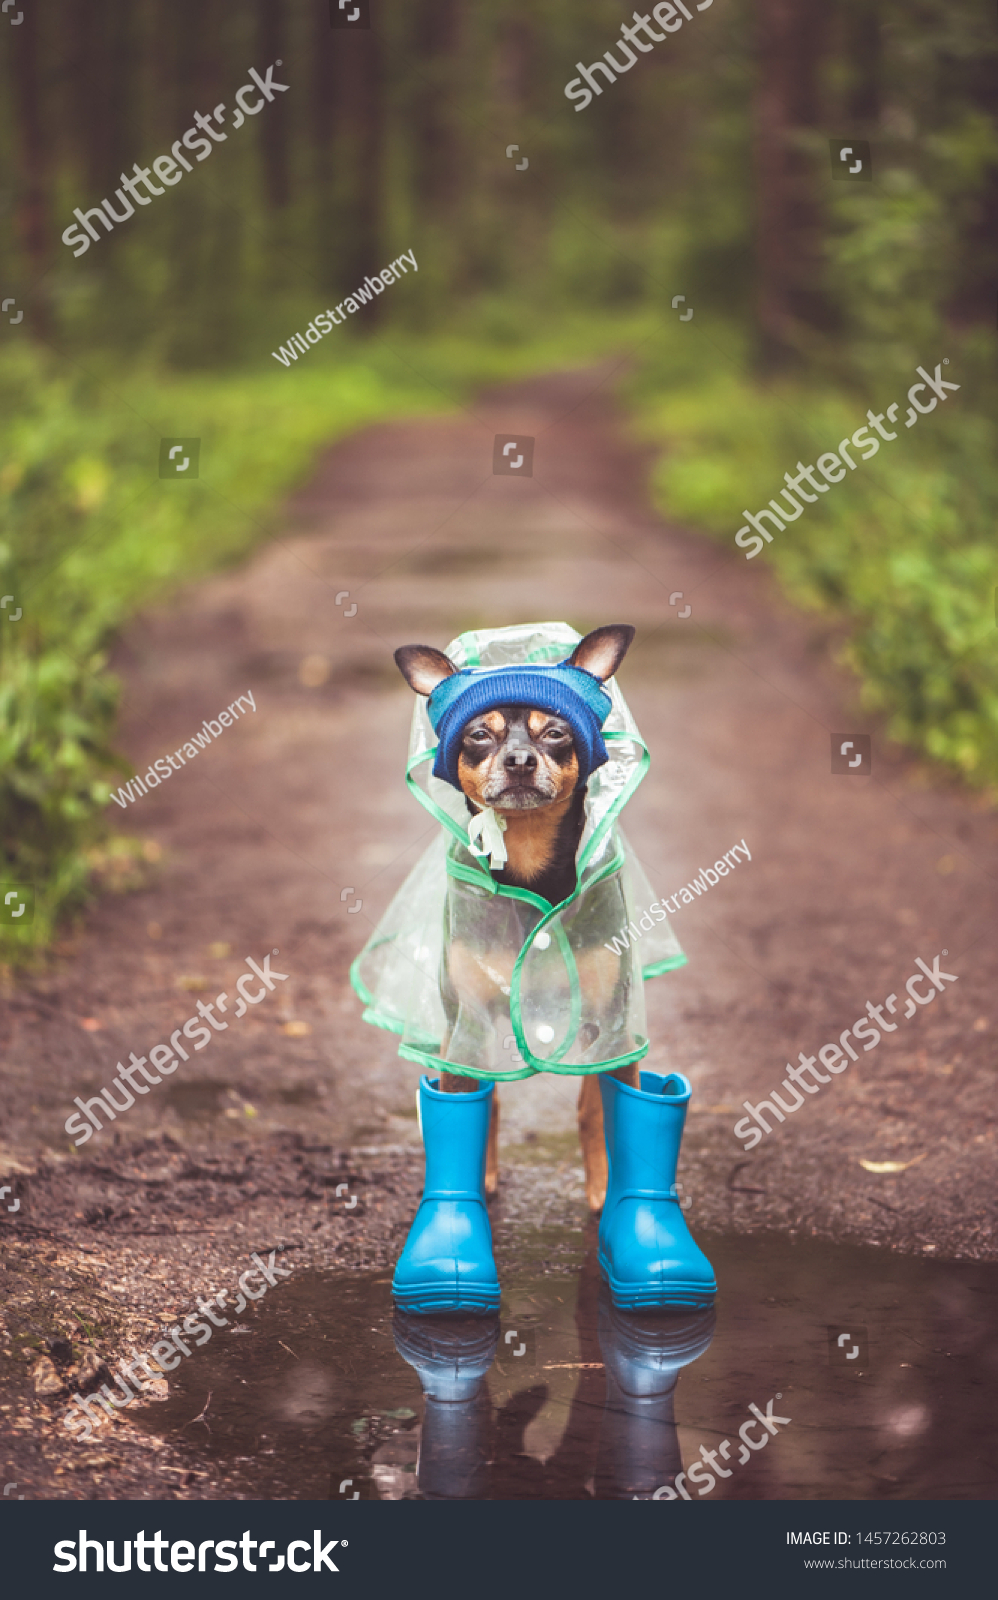 dog rain boots and raincoat